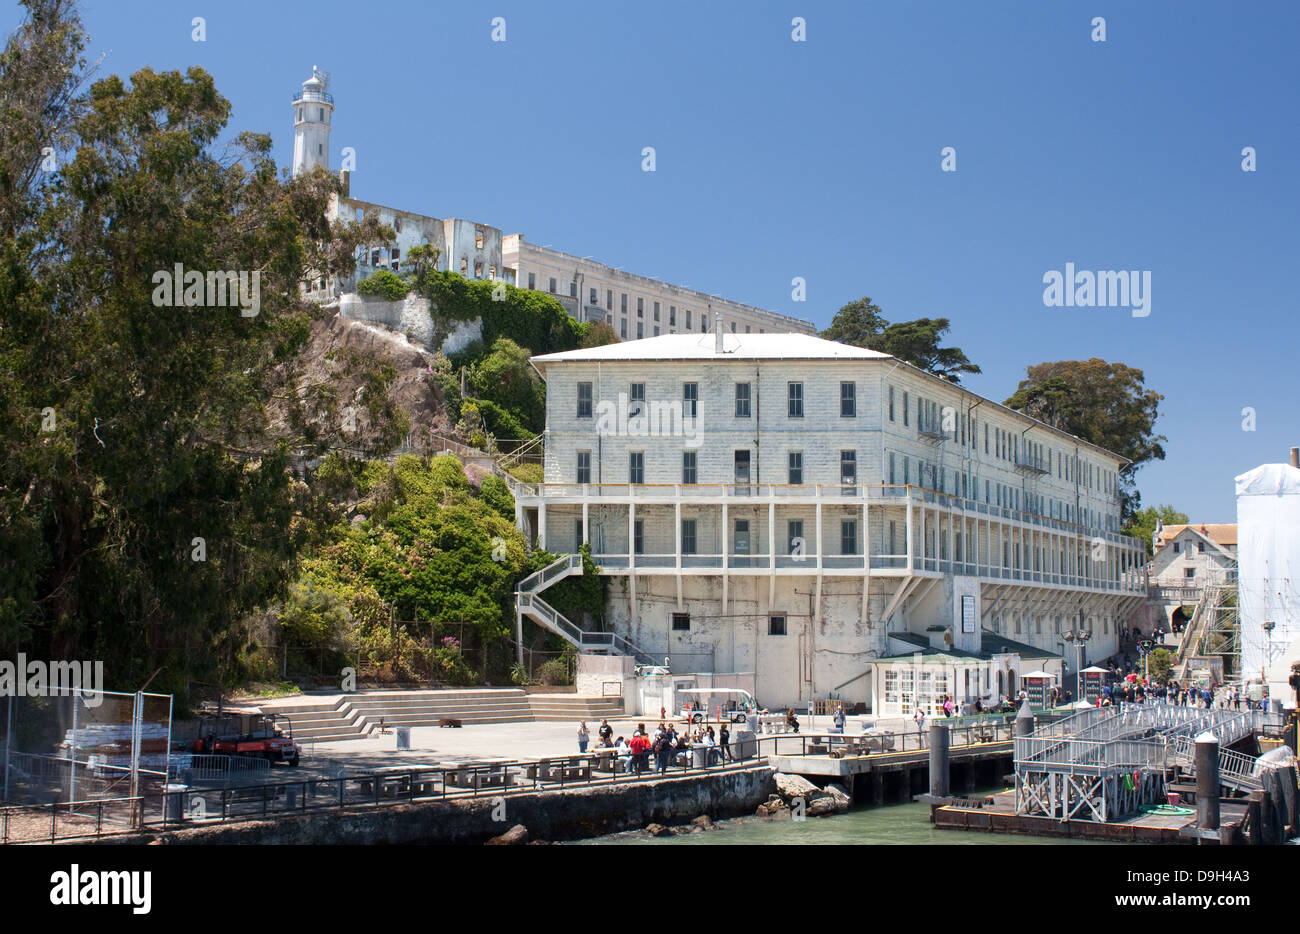 Le quai de débarquement de l'île d'Alcatraz Banque D'Images